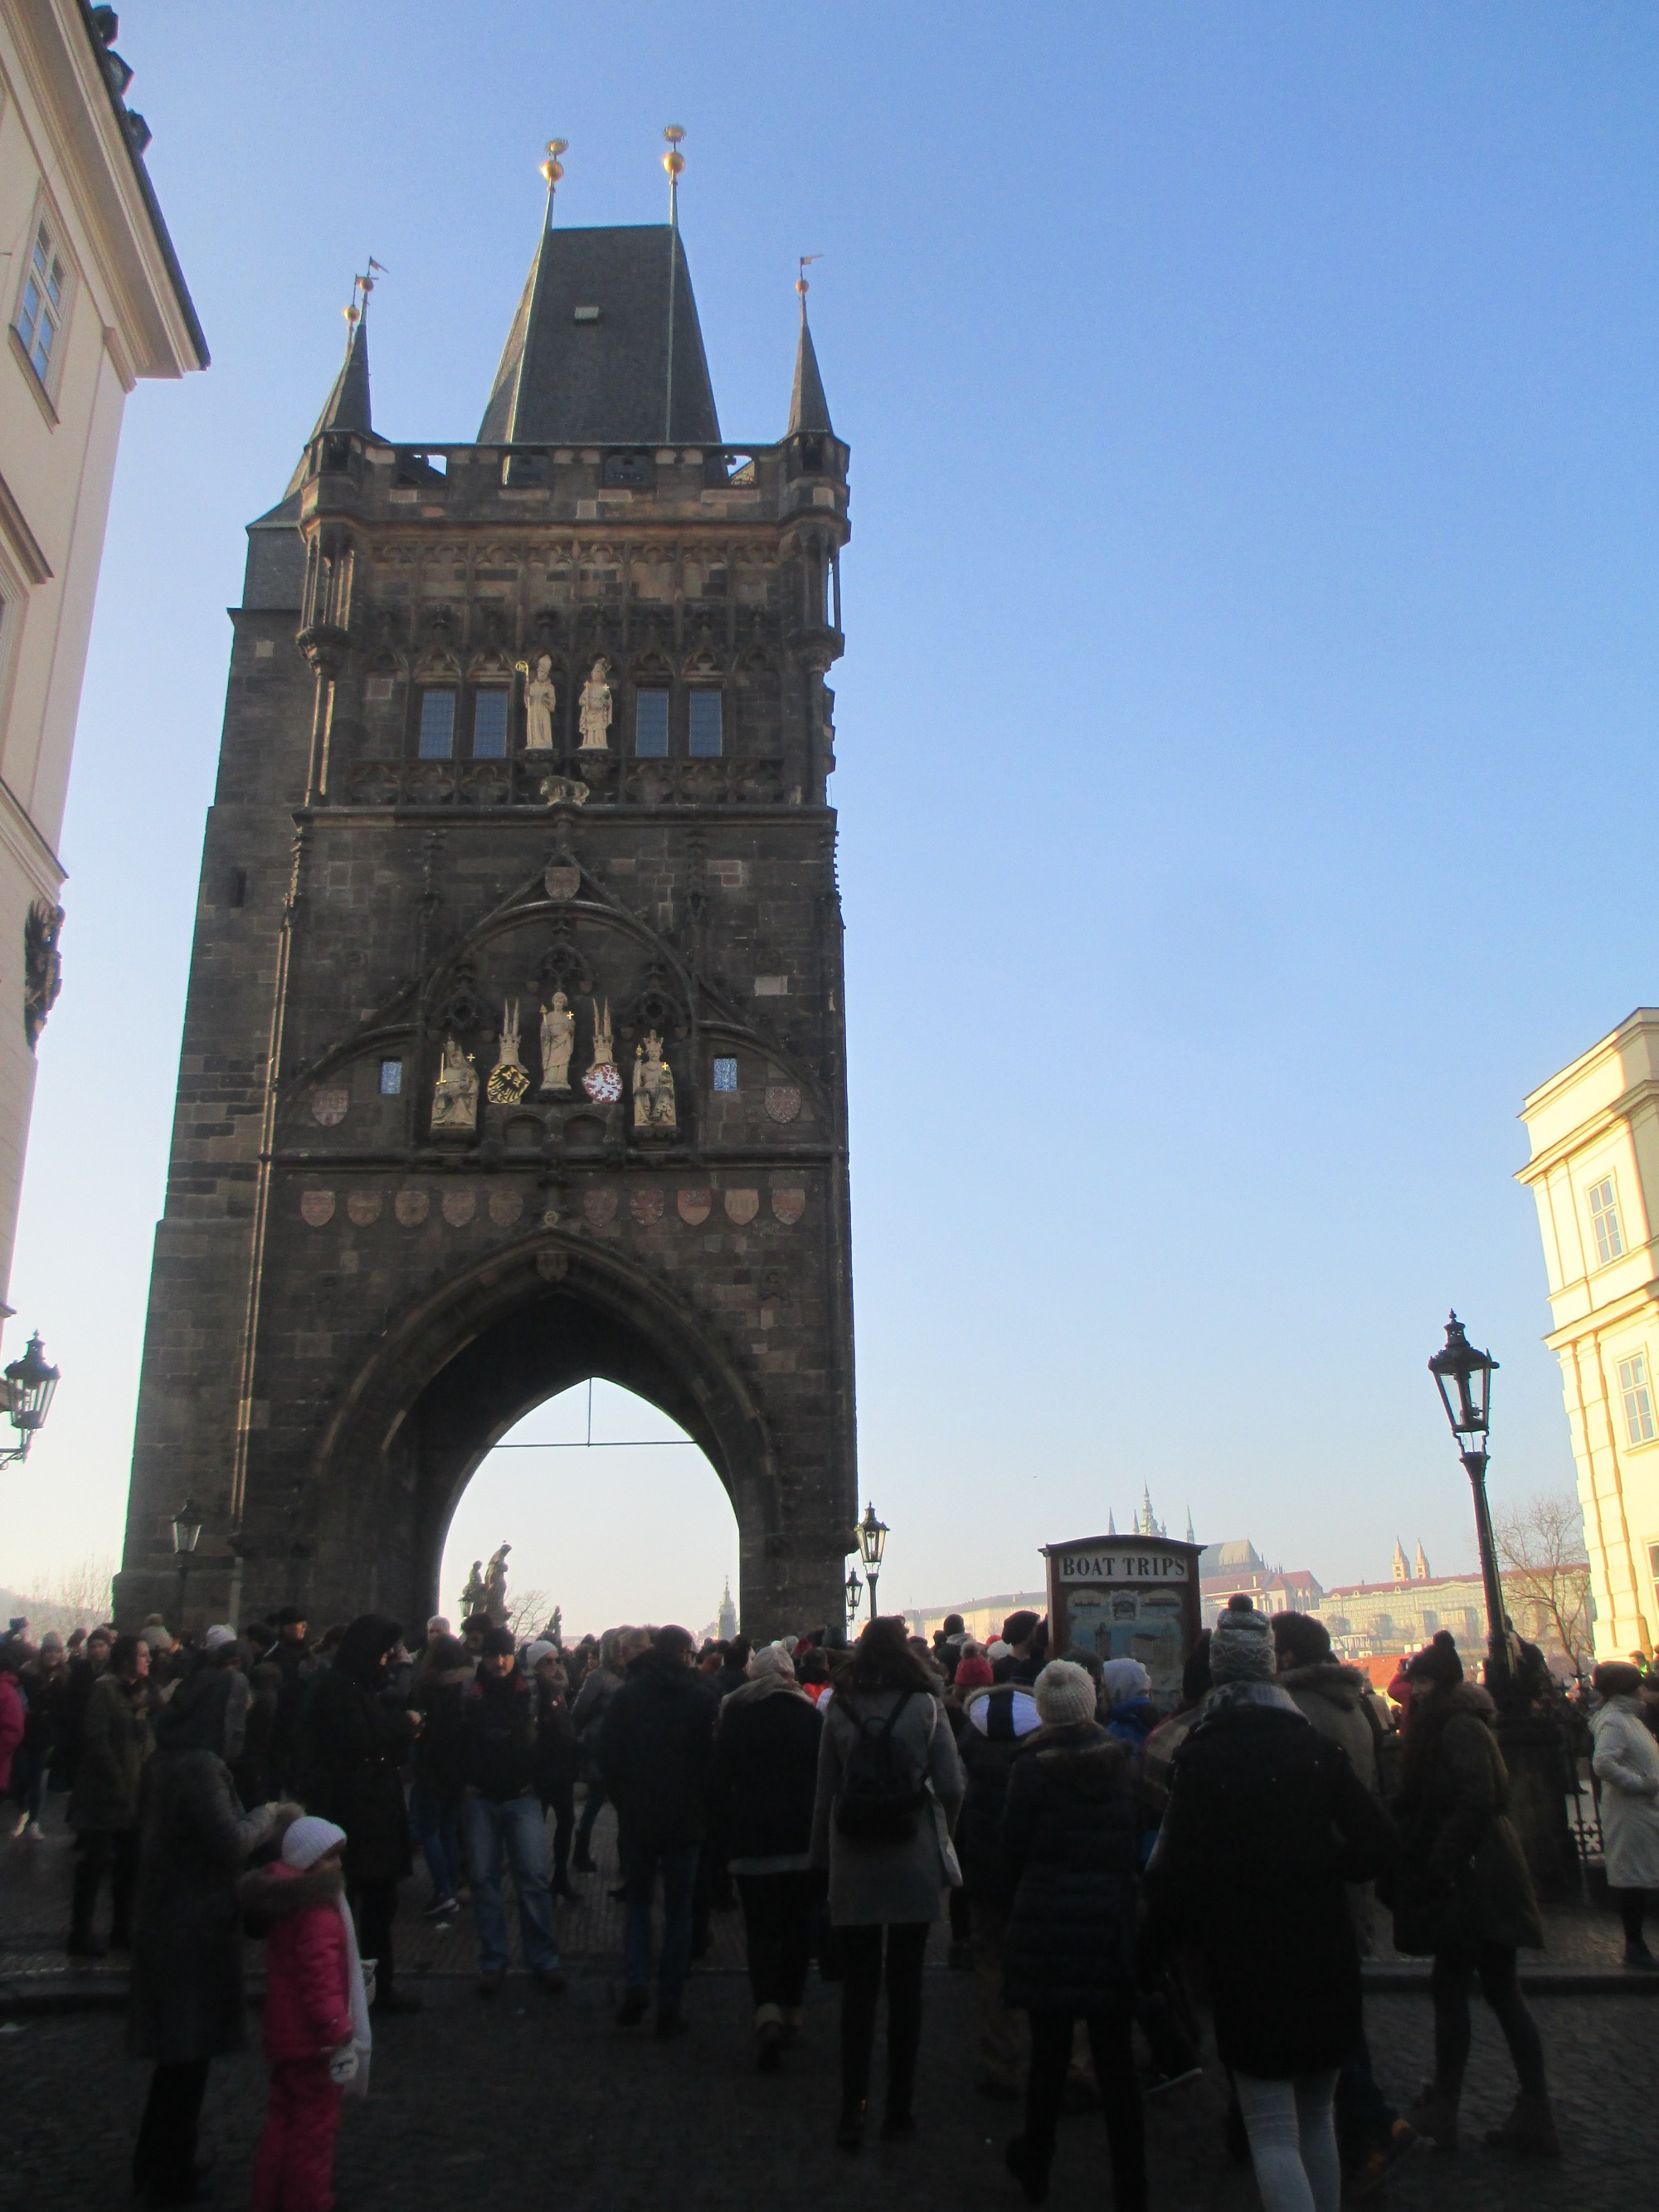 Прага. Староместская мостовая башня. (31.12.2016)